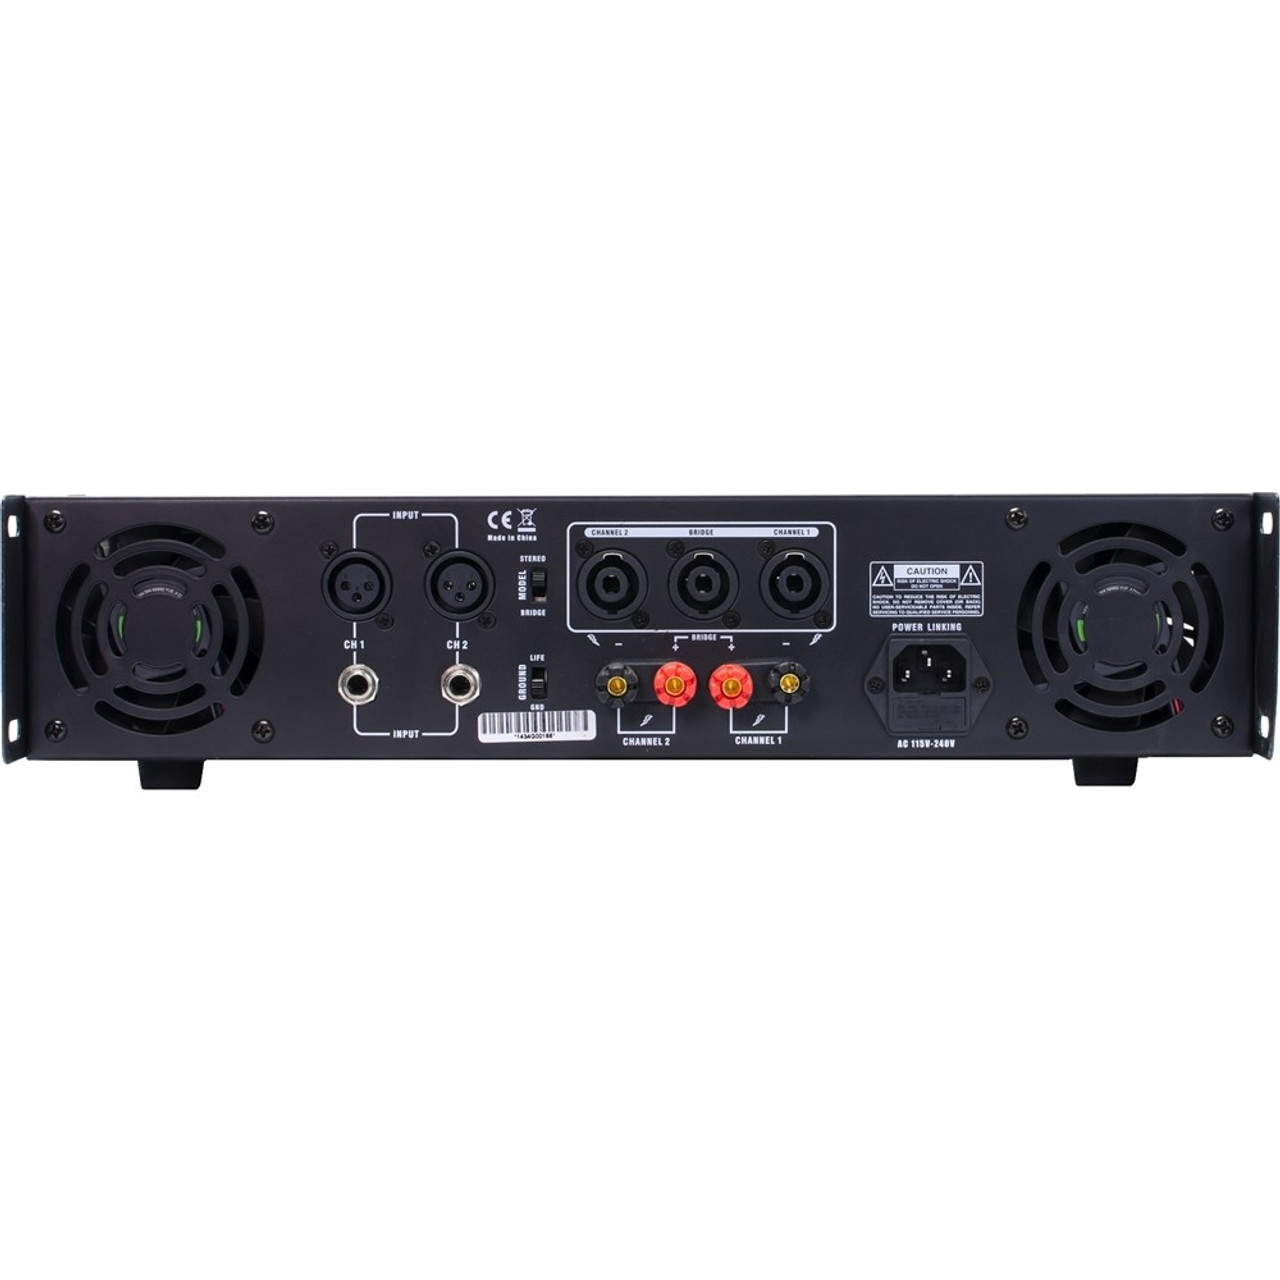 Gemini - Pro Audio 250W 2.0 Power Amplifier - Black